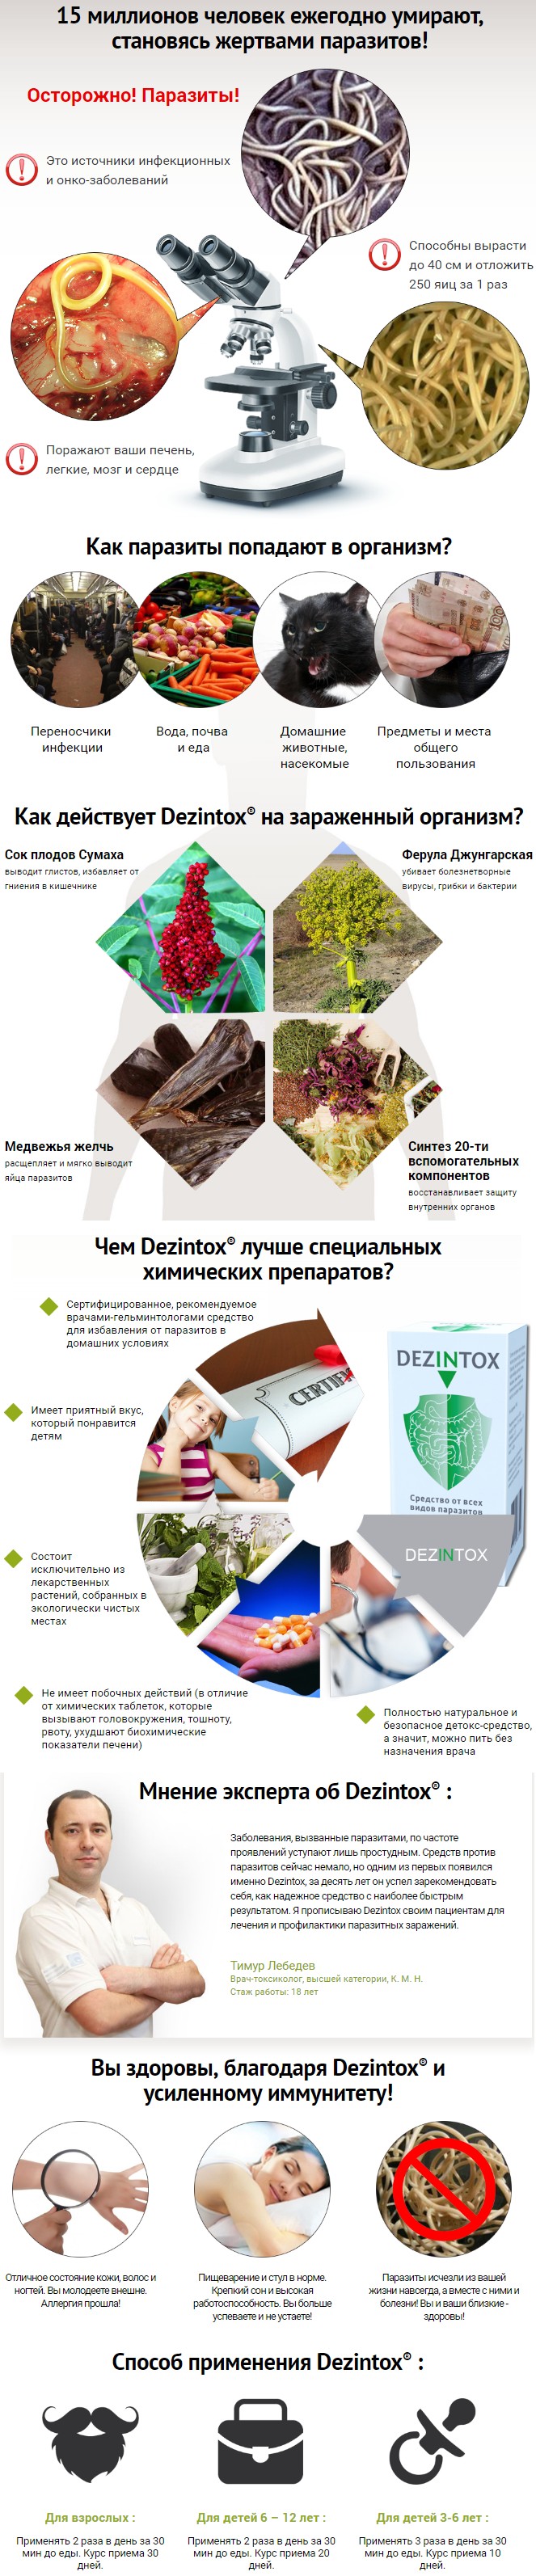 Dezintox (Дезинтокс) препарат от паразитов купить